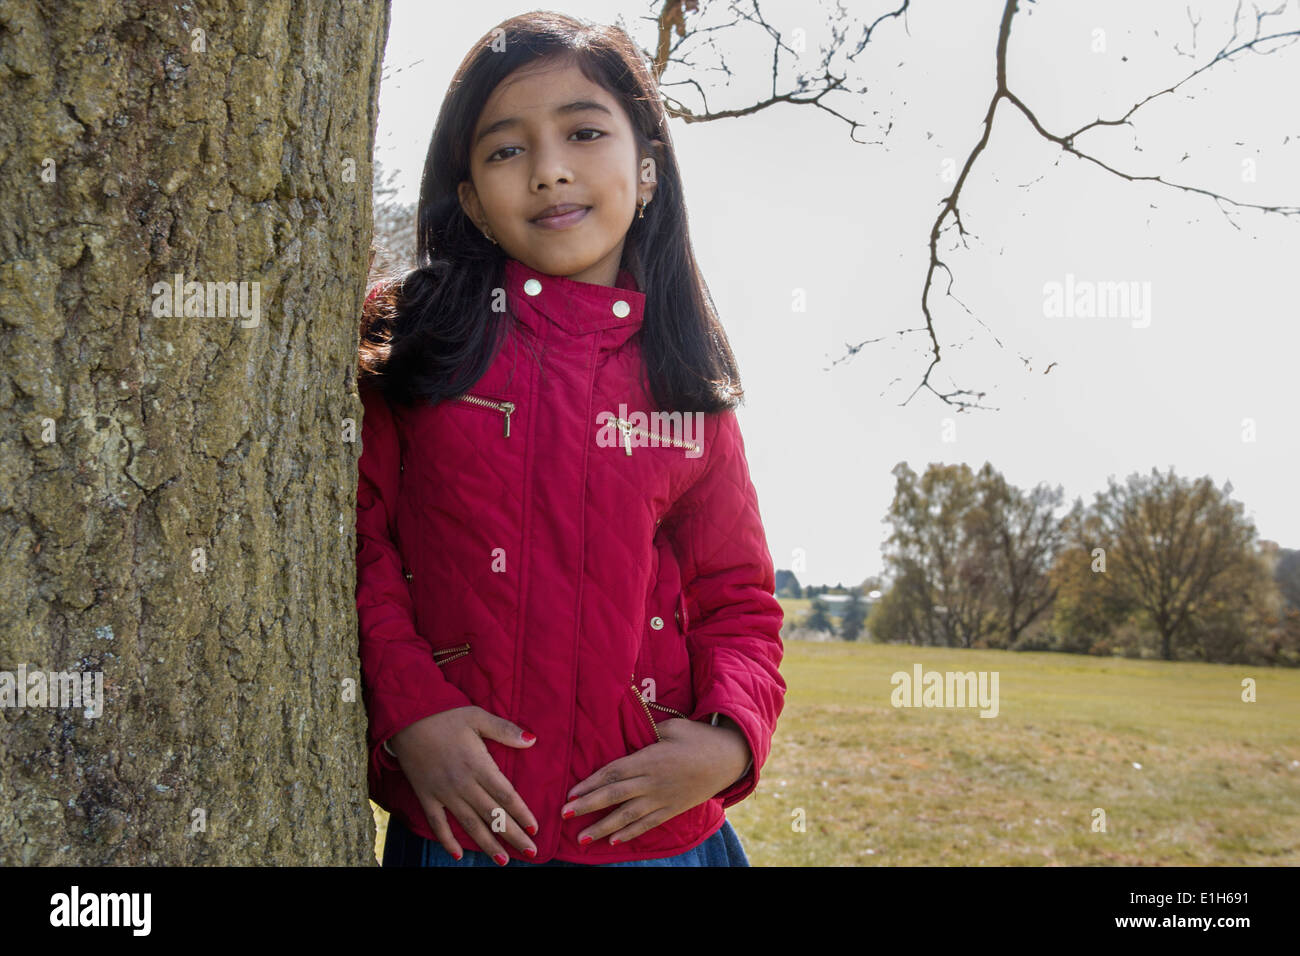 Retrato de muchacha RECOSTADA contra el tronco de árbol Foto de stock